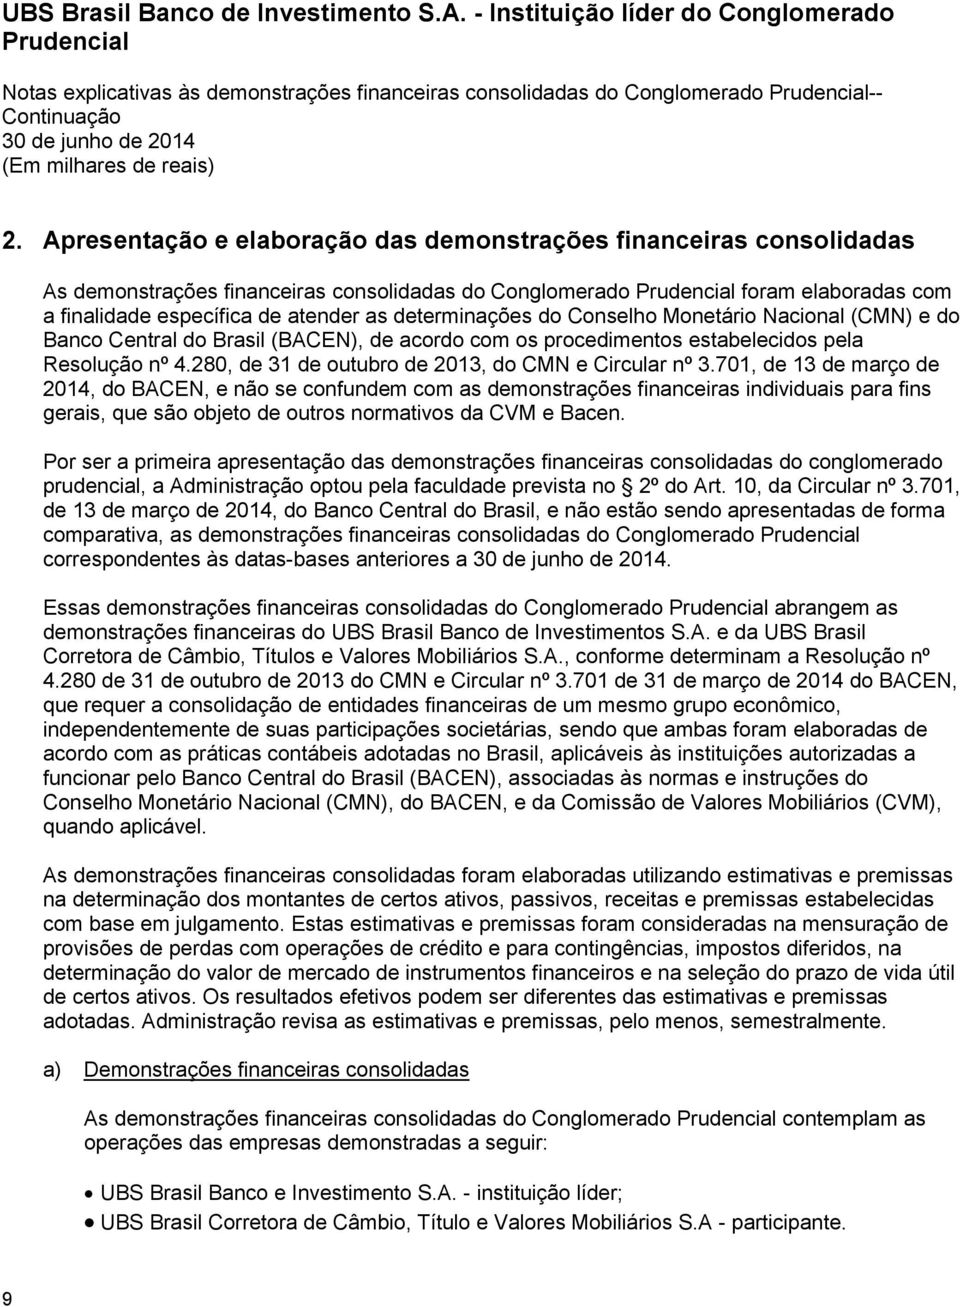 do Conselho Monetário Nacional (CMN) e do Banco Central do Brasil (BACEN), de acordo com os procedimentos estabelecidos pela Resolução nº 4.280, de 31 de outubro de 2013, do CMN e Circular nº 3.